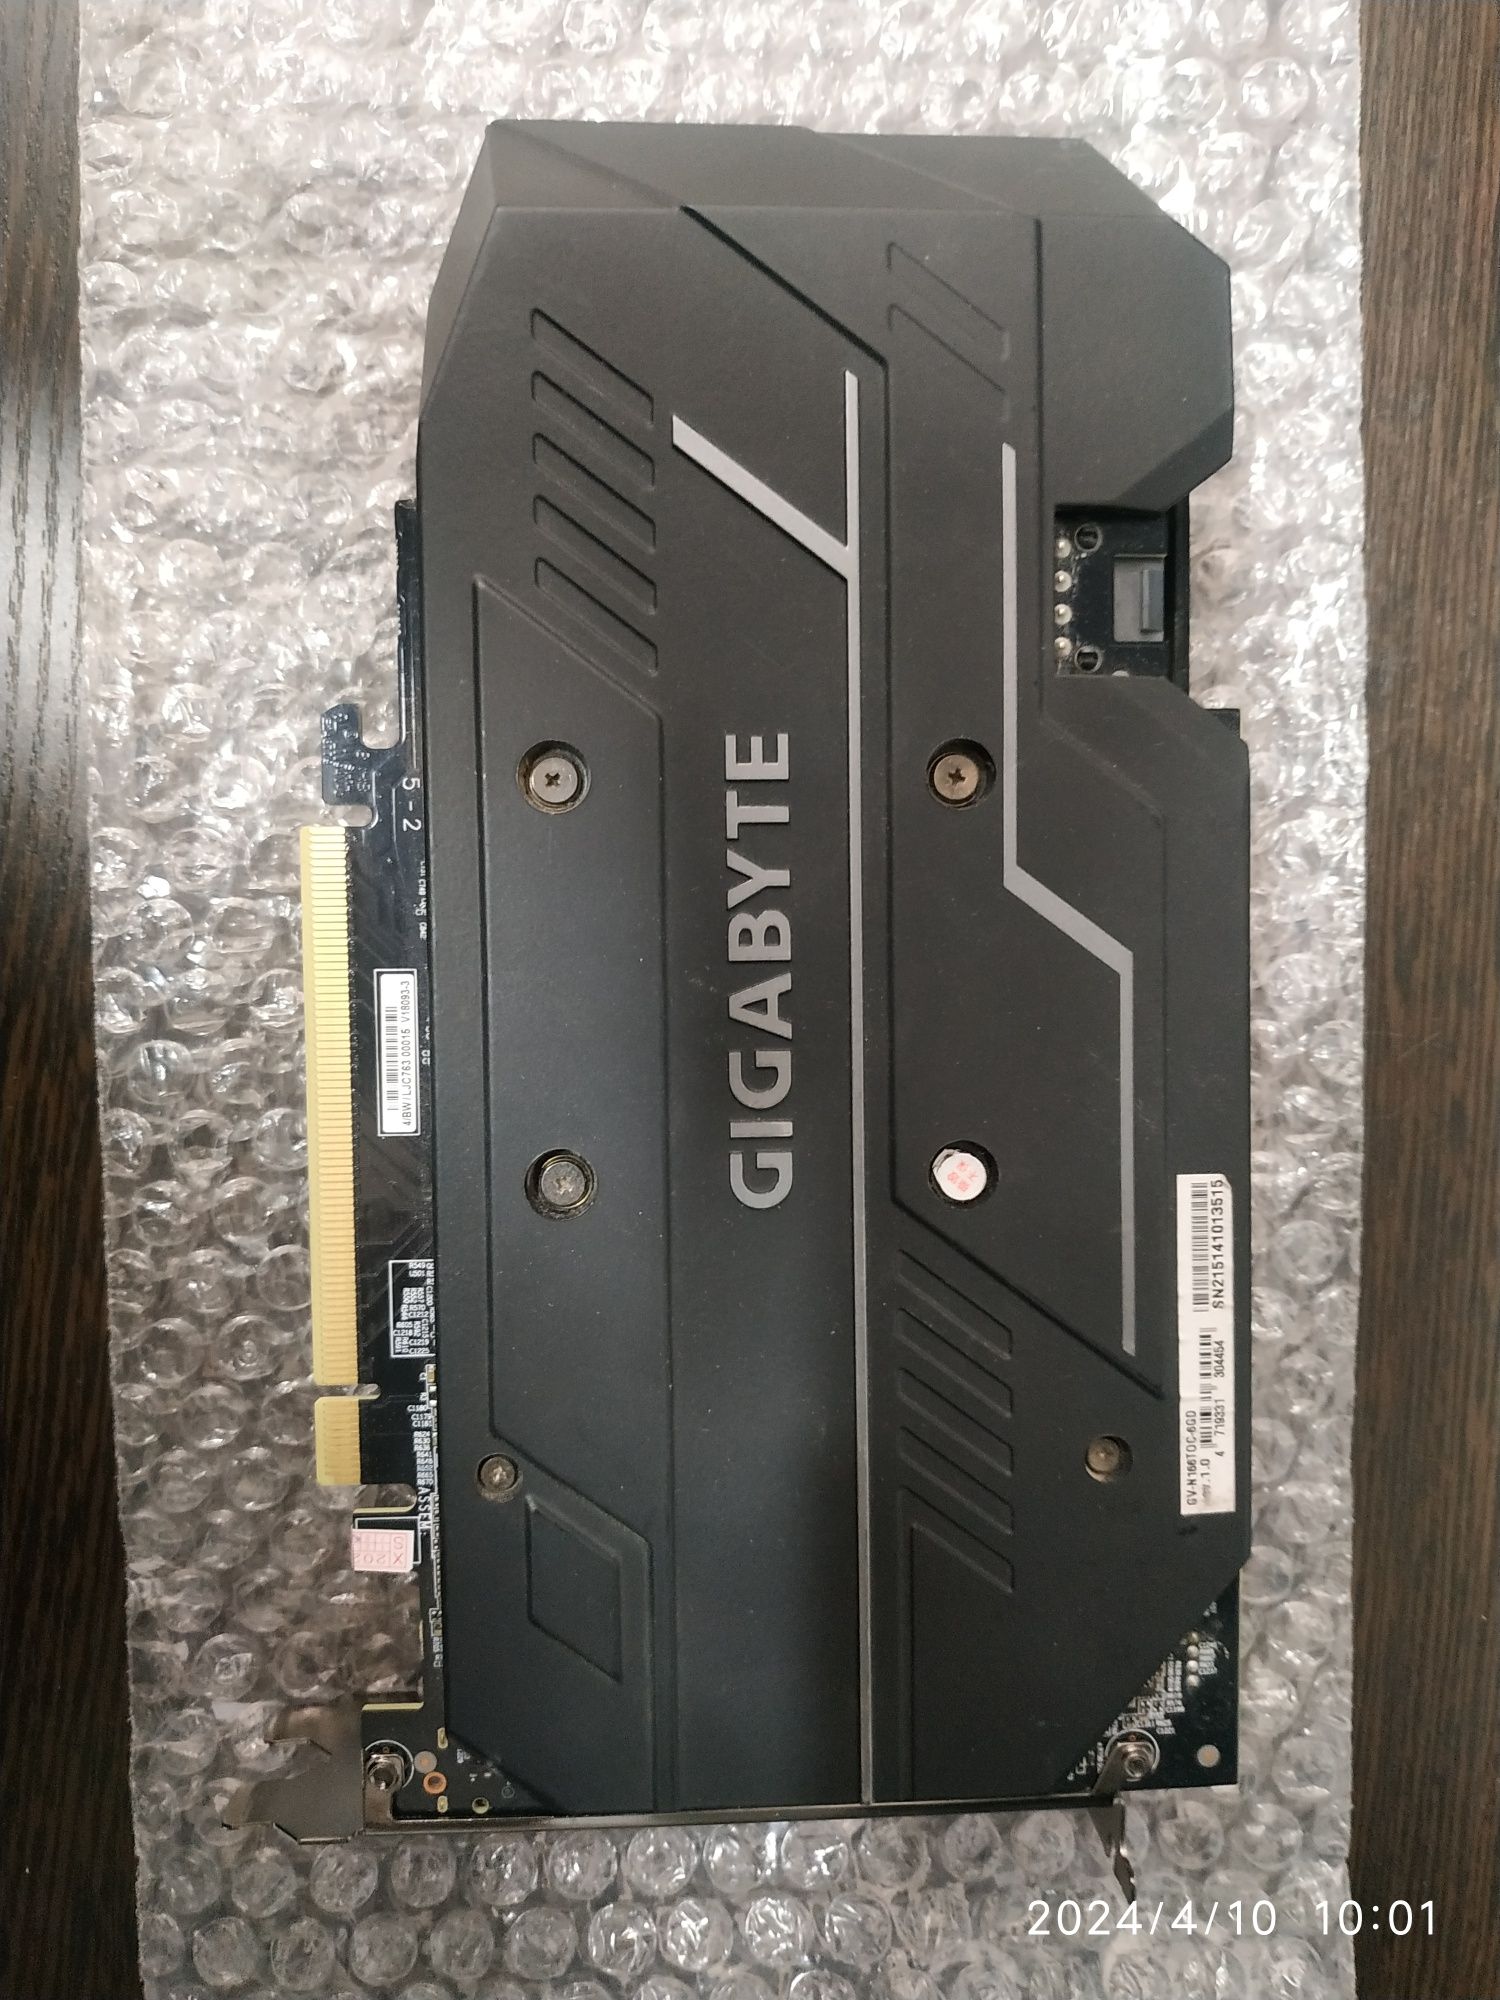 Gigabyte GTX1660Ti 6Gb 192bit GDDR6